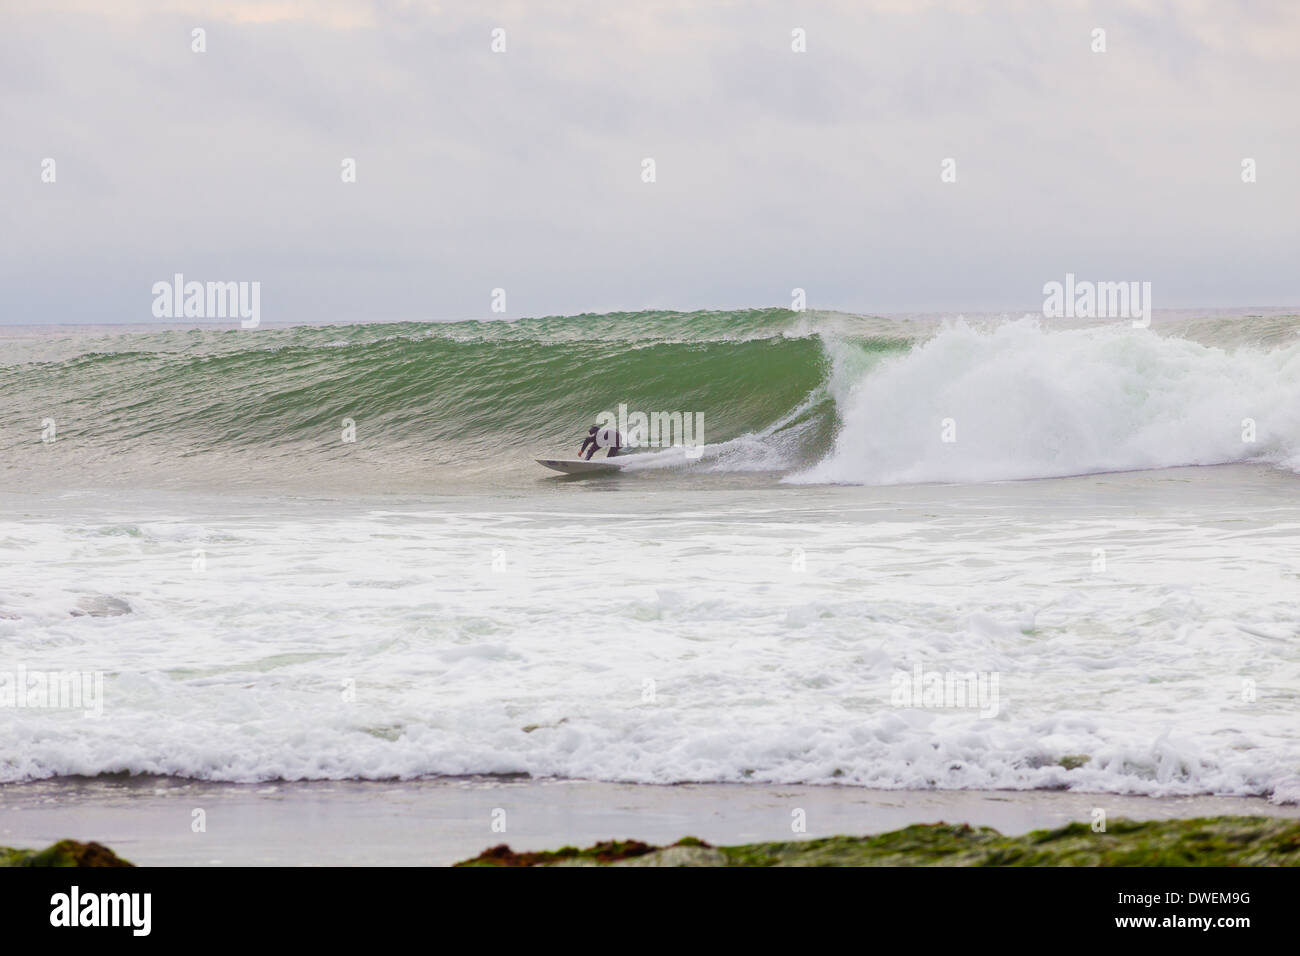 La Jolla, CA - 30 janvier 2014 : surfeur professionnel Skip to navigation mccullough une vague dans la Jolla, CA lors d'une session de surf. Banque D'Images